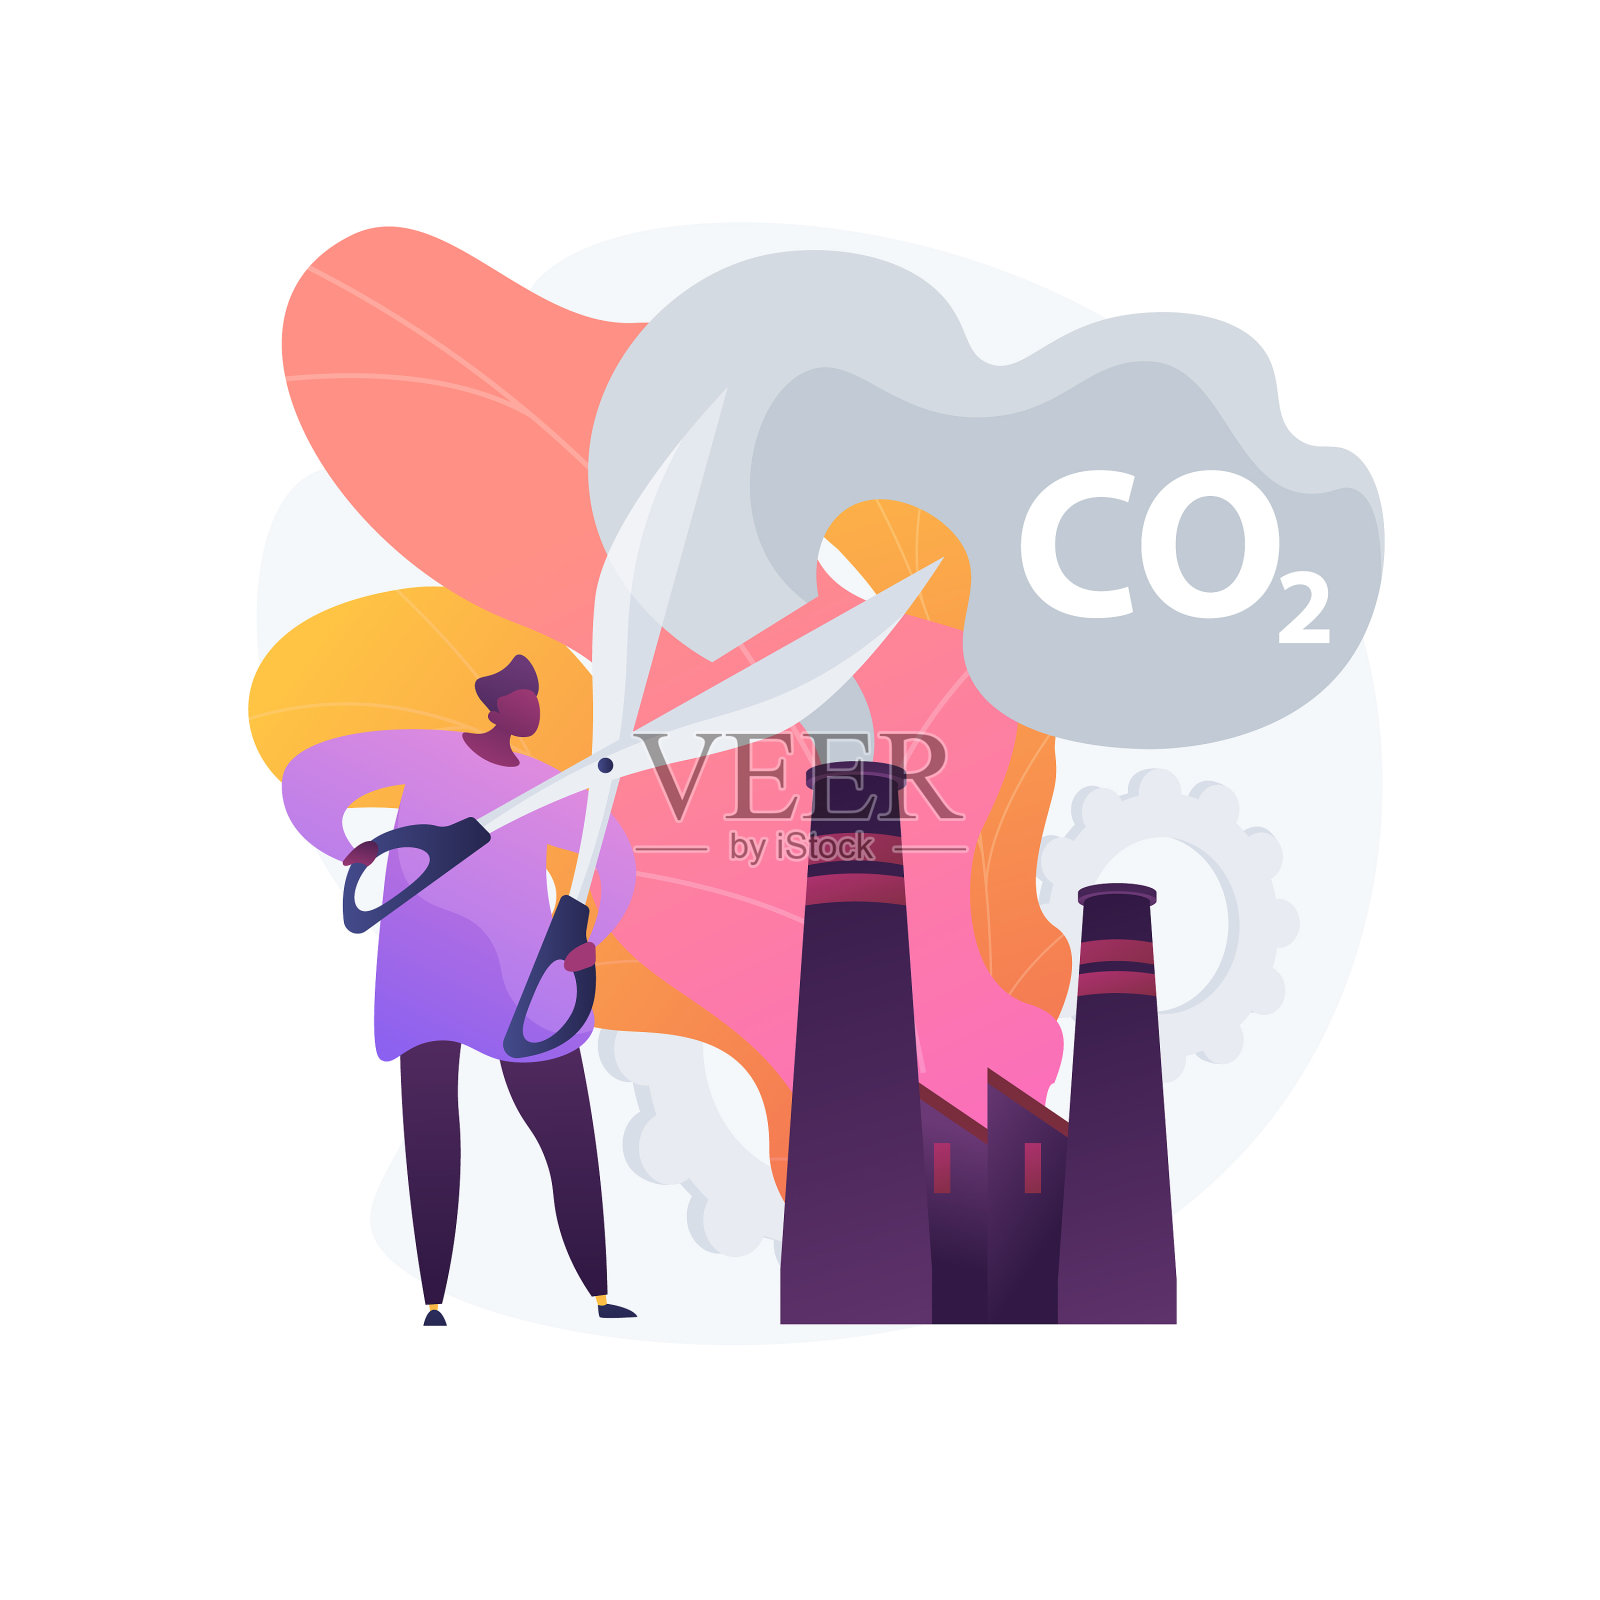 二氧化碳排放概念隐喻设计元素图片